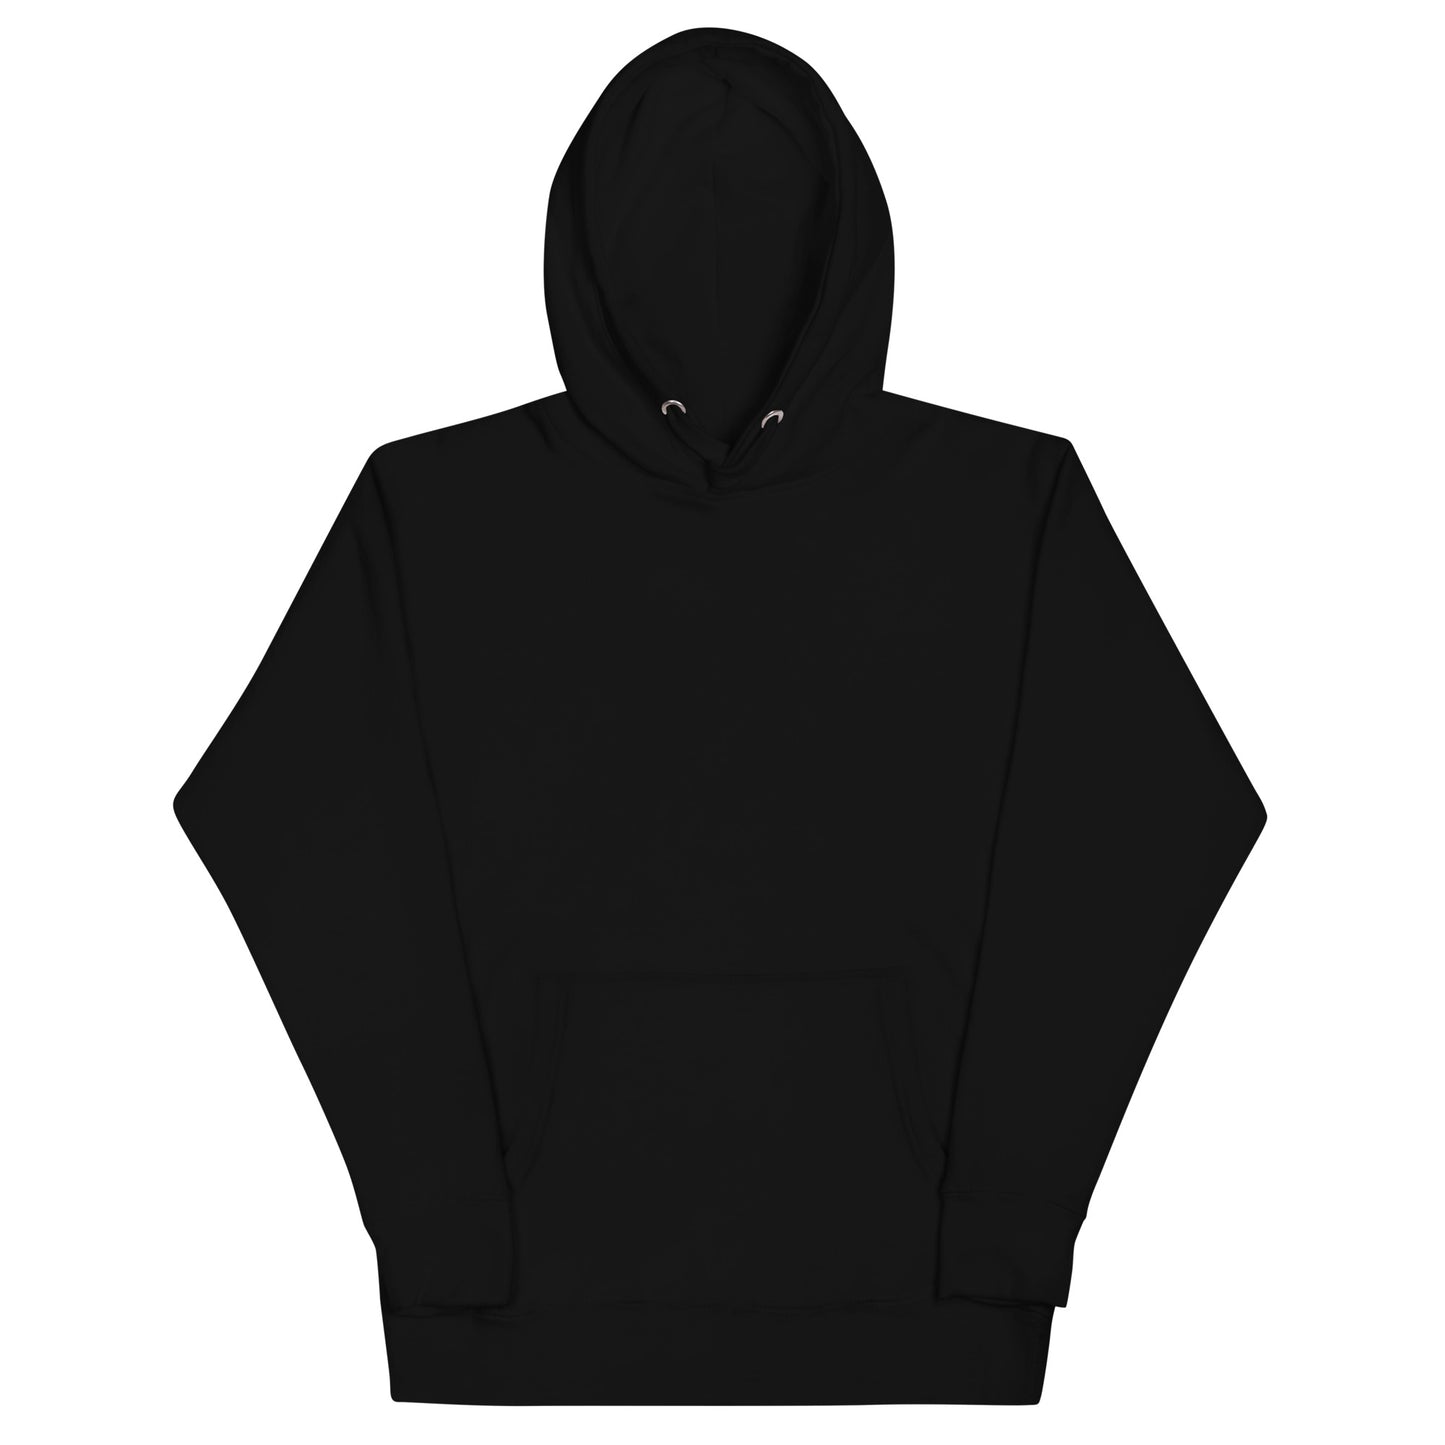 Essential hoodie Hoodies Hoodies for men Sweatshirt Black hoodie Hoodies for women Sweatshirts for women Graphic hoodies Sweatshirt for men Custom hoodies